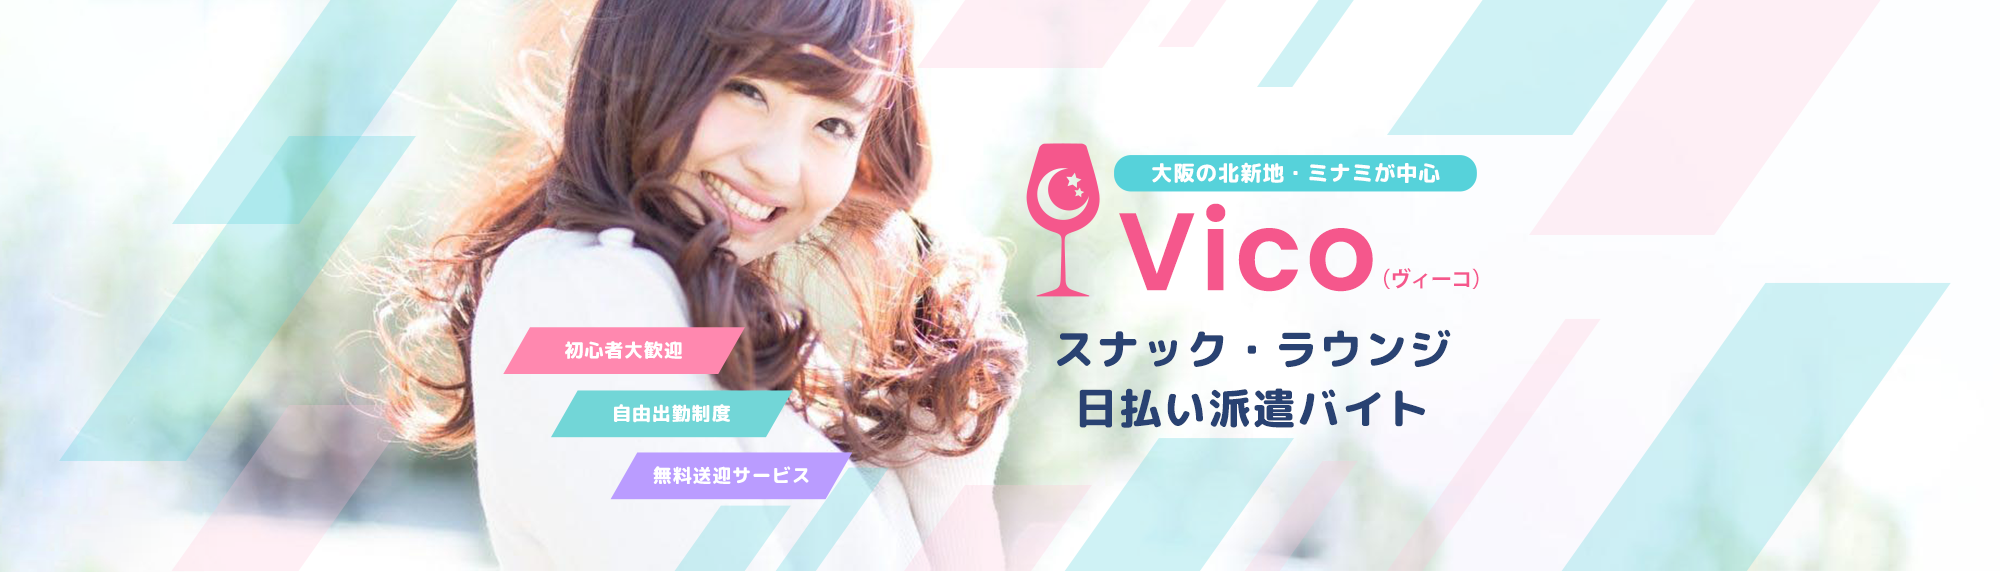 大阪(北新地・ミナミ)のスナック・ラウンジ日払い派遣バイトは「Vico」